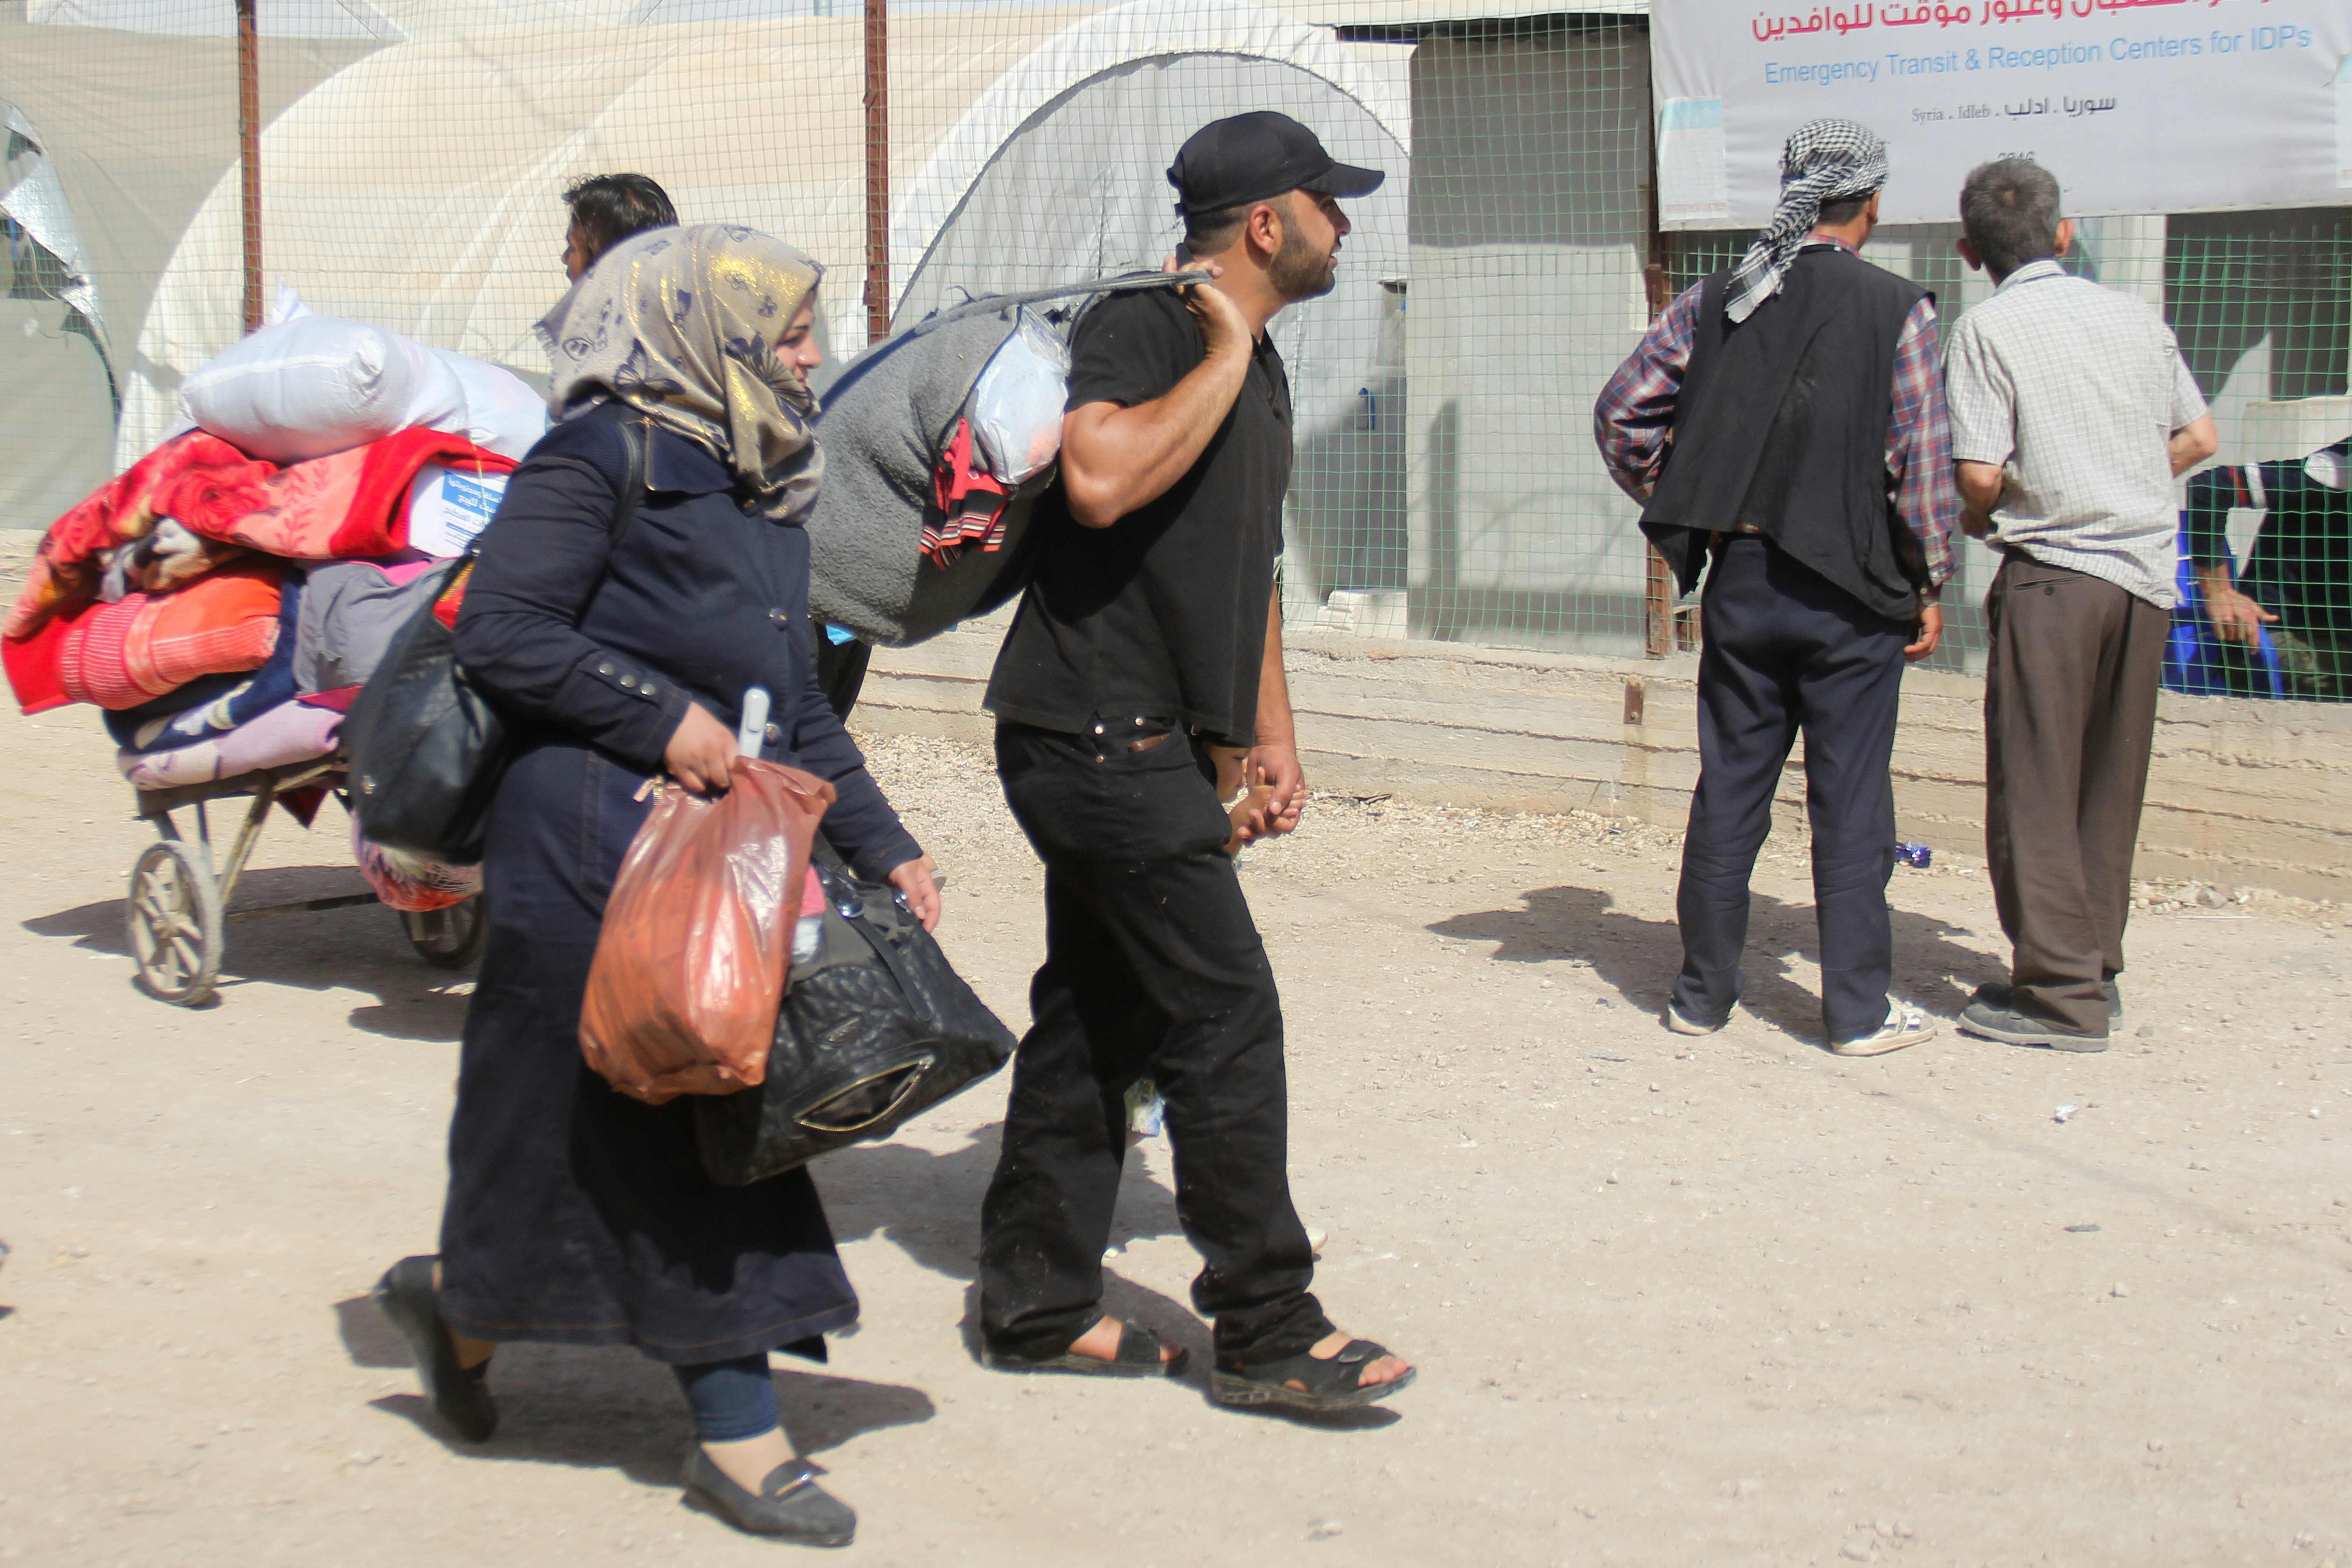 أسر مقاتلو المعارضة المسلحة يحملون أمتعتهم بعد خروجهم من القابون